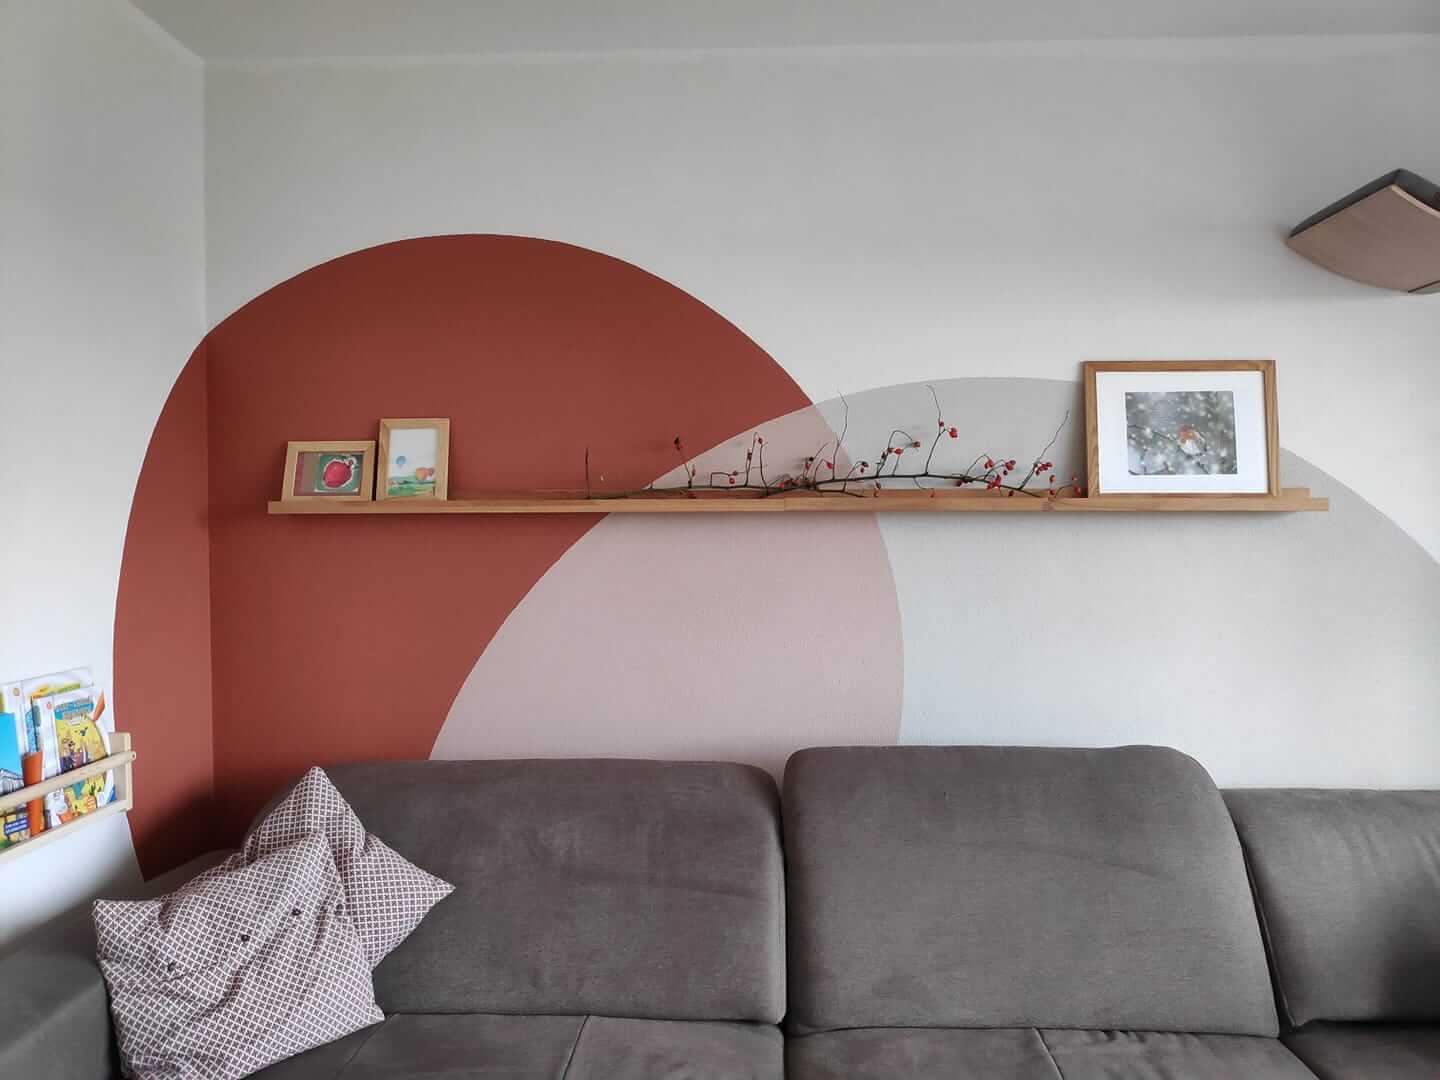 wohnzimmer wandgestaltung: ideen & die richtige farbwahl!